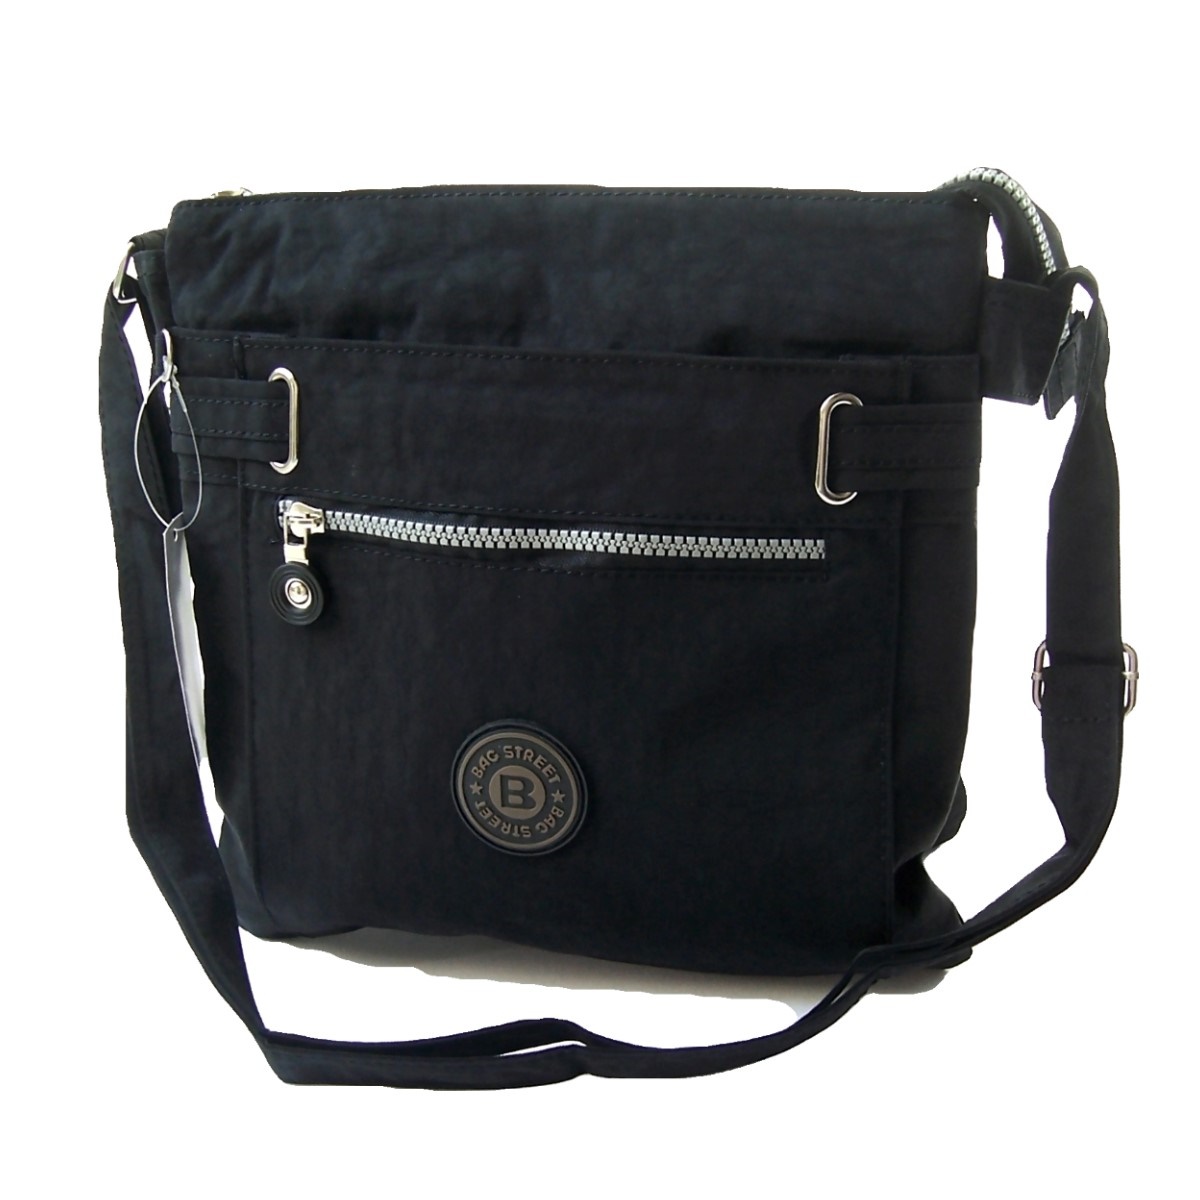 Umhängetasche Damentasche Bag Street Handtasche schwarz grau stone #3818 